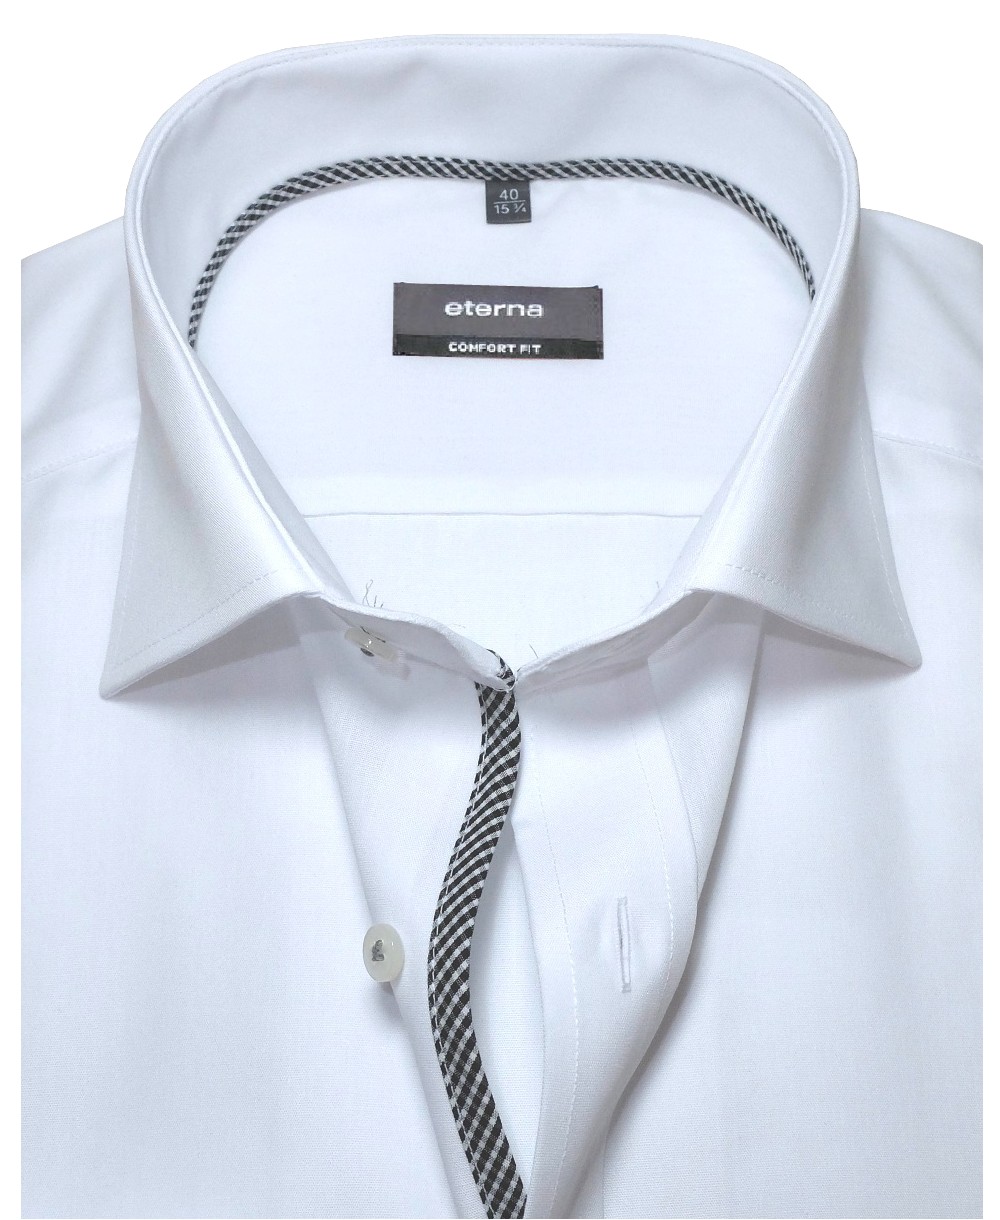 Hochwertige zu eterna Details mit - fairen Langarmhemd weiss Comfort Marken Fit in führender modischen Herrenmode